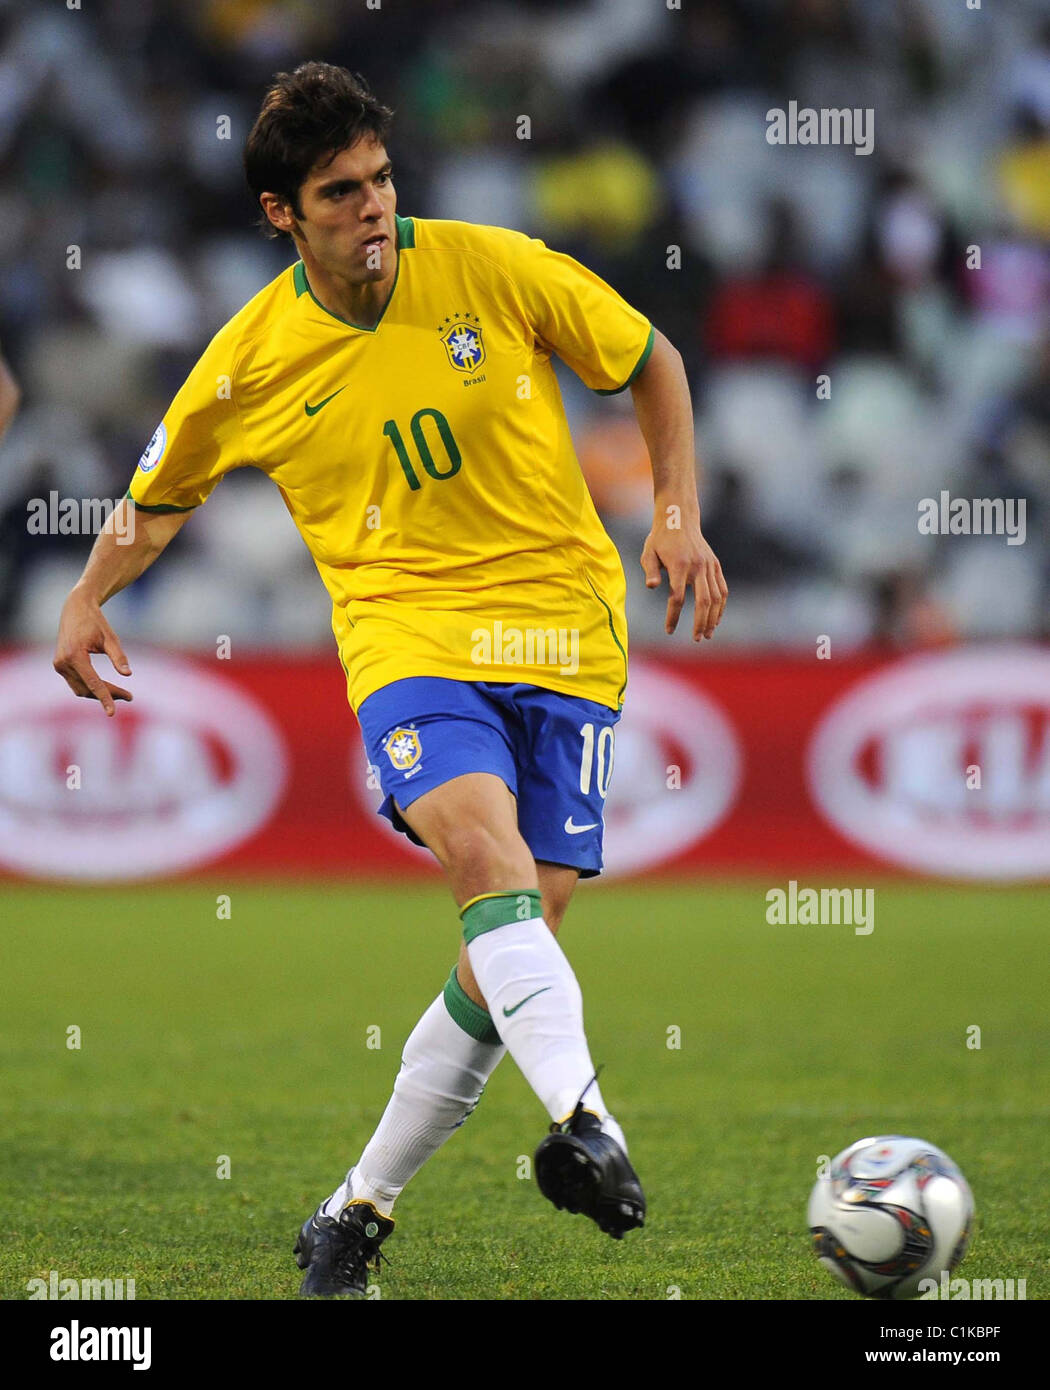 Kaka en action pour le Brésil de Football Coupe de la Confédération de la  FIFA - Brésil v Egypte Bloemfontein, Afrique du Sud - 14.06.09 Photo Stock  - Alamy